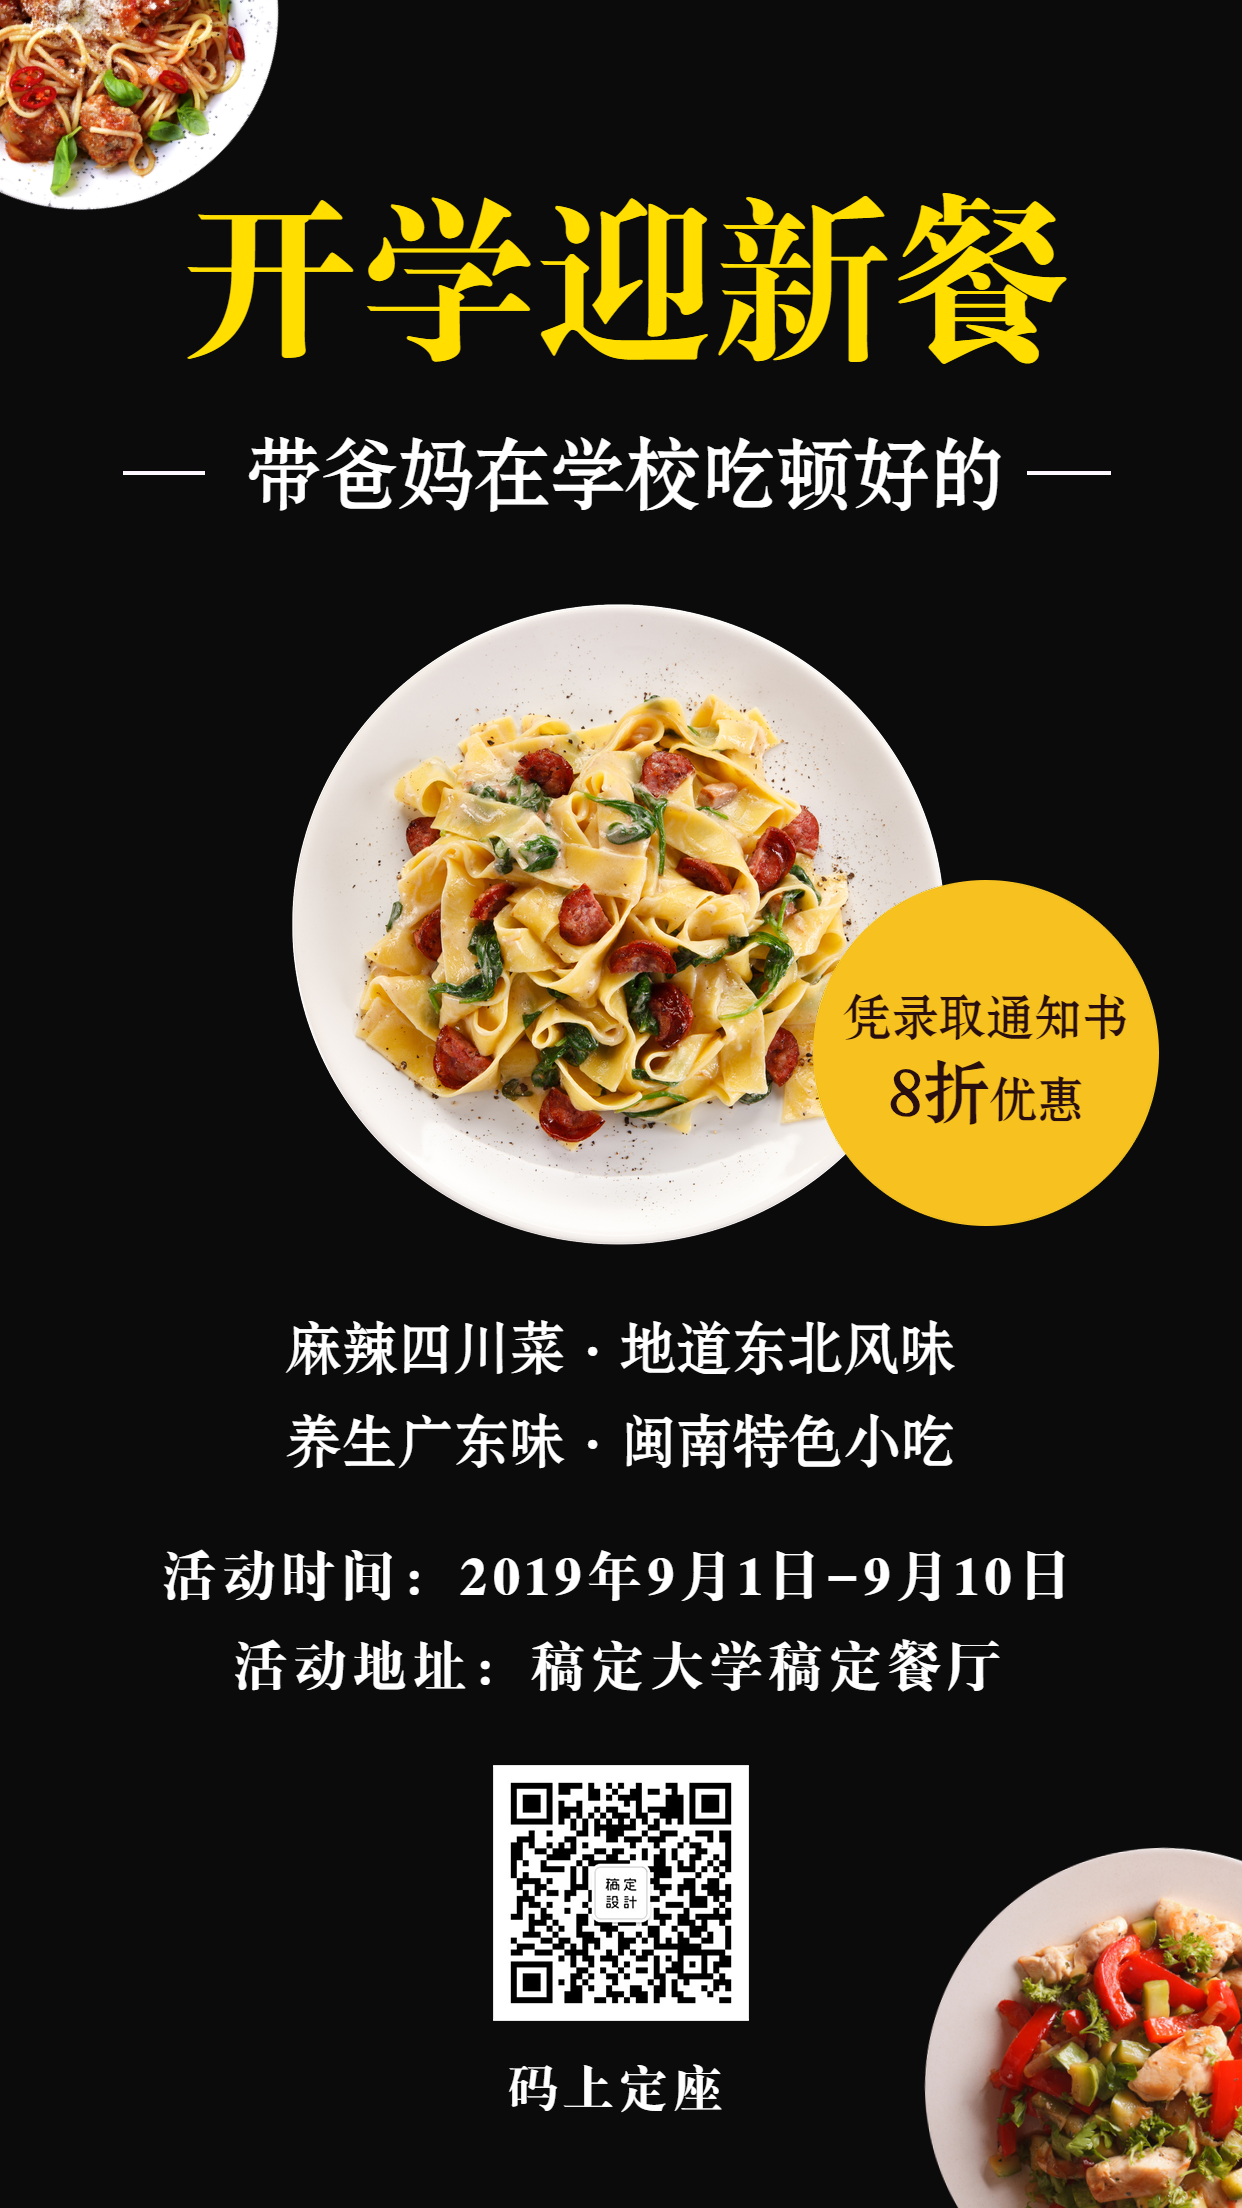 开学迎新餐促销优惠餐饮美食录取手机海报预览效果